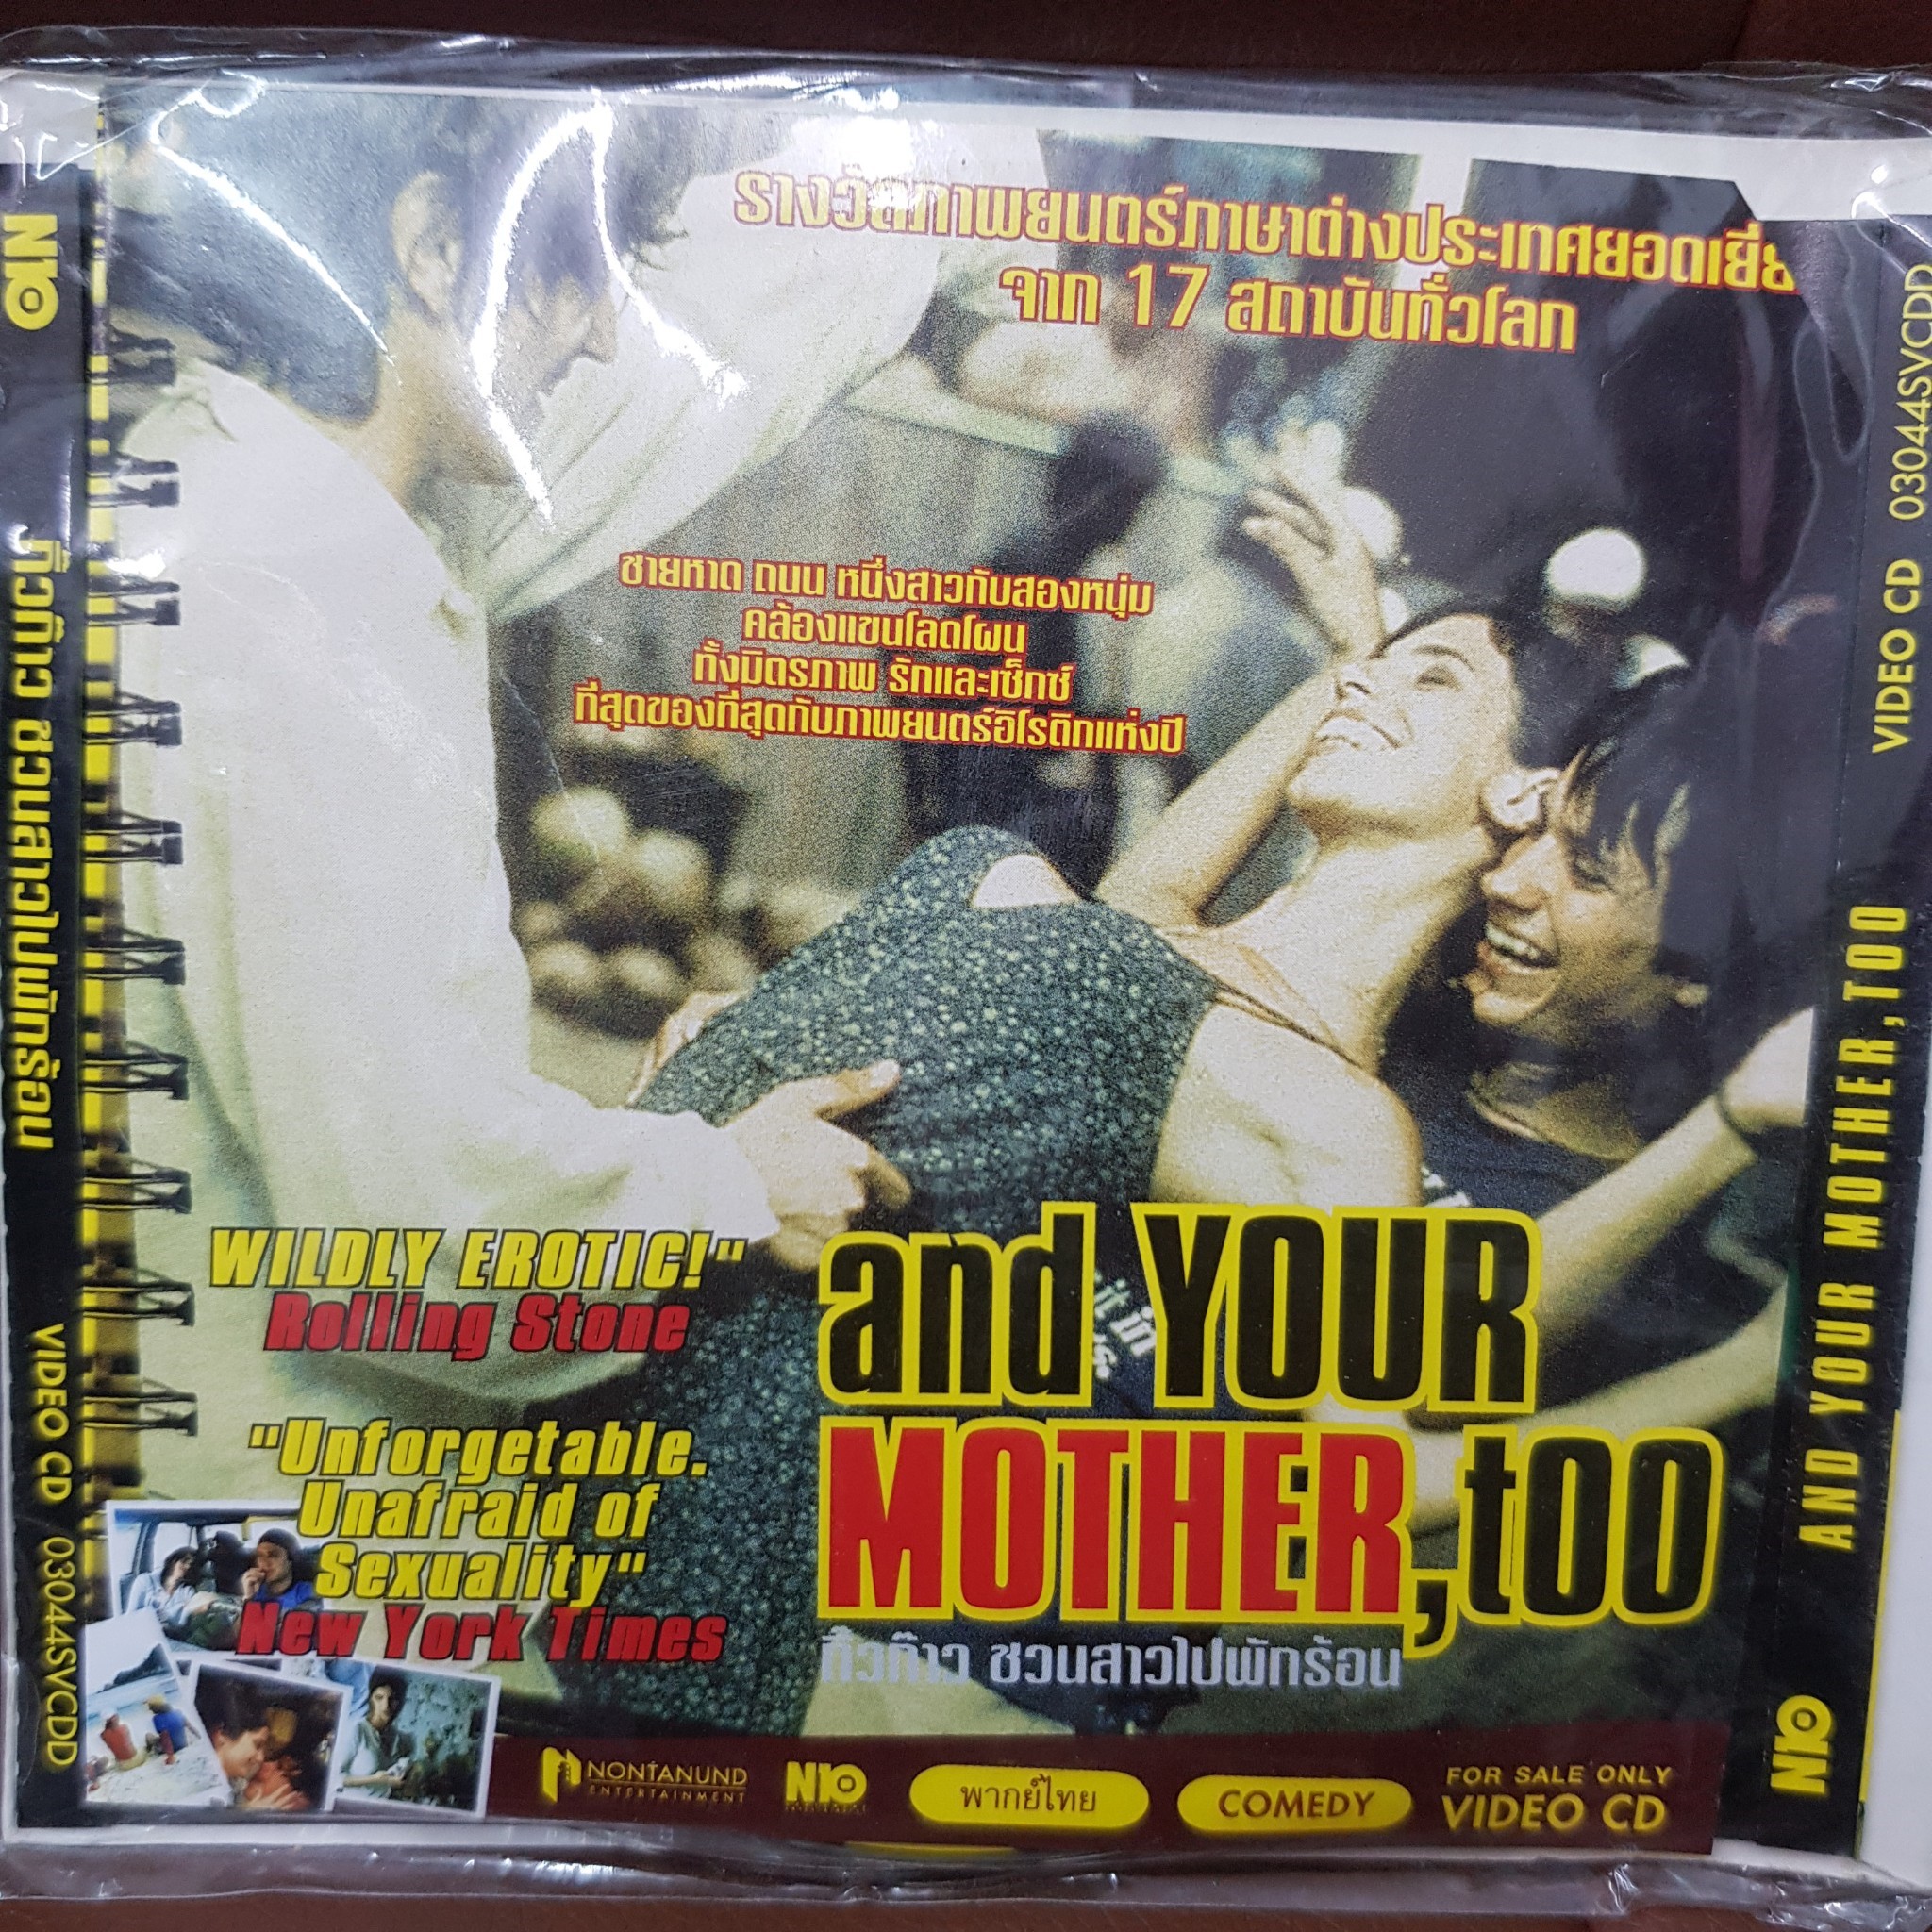 VCD กิ๊วก๊าวชวนสาวไปพักร้อน and your mother too พากย์ไทย (SBYVCD59-กิ๊วก๊าวชวนสาวไปพักร้อน) หนัง โรแมนติก หนังตลก เบาสมอง หนังเก่า หายาก วีซีดี ลดราคา ดูหนัง ลิขสิทธิื มาสเตอร์แท้ ภาพยนตร์ cinema theater STARMART